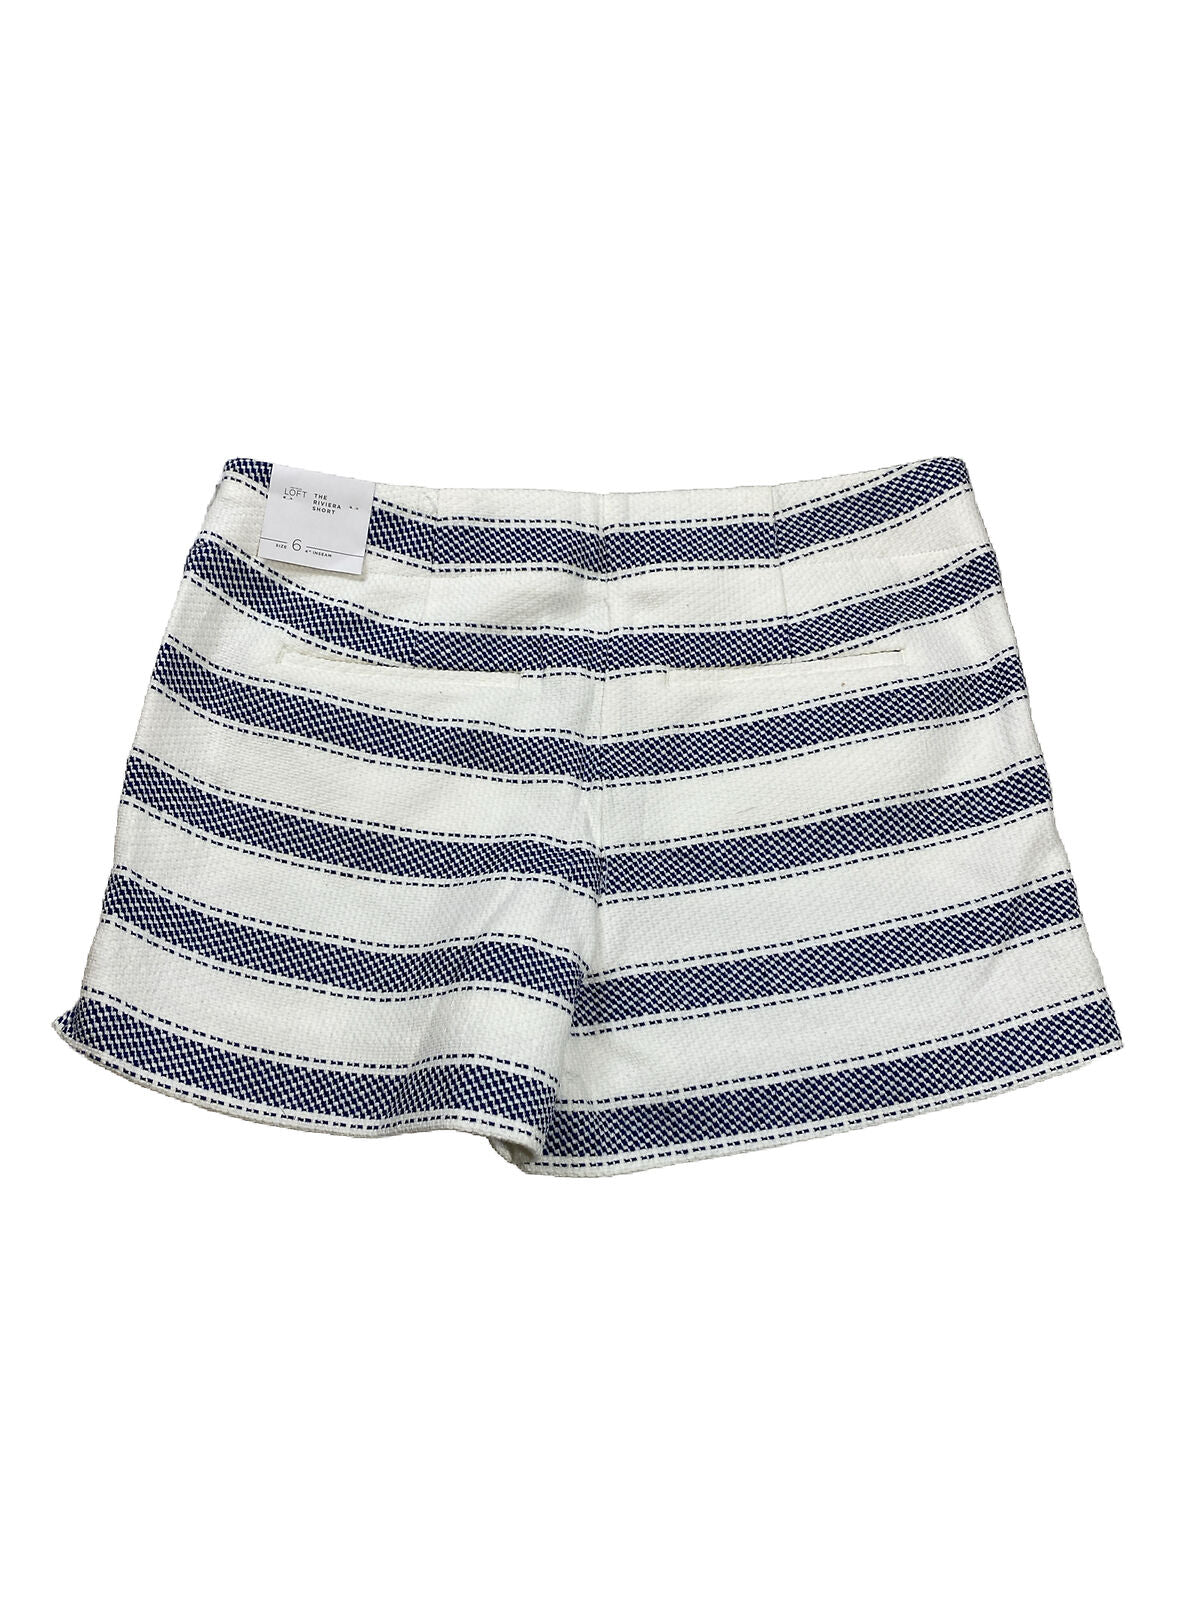 NEW LOFT Pantalones cortos con detalles de botones a rayas blancas/azules para mujer - 6